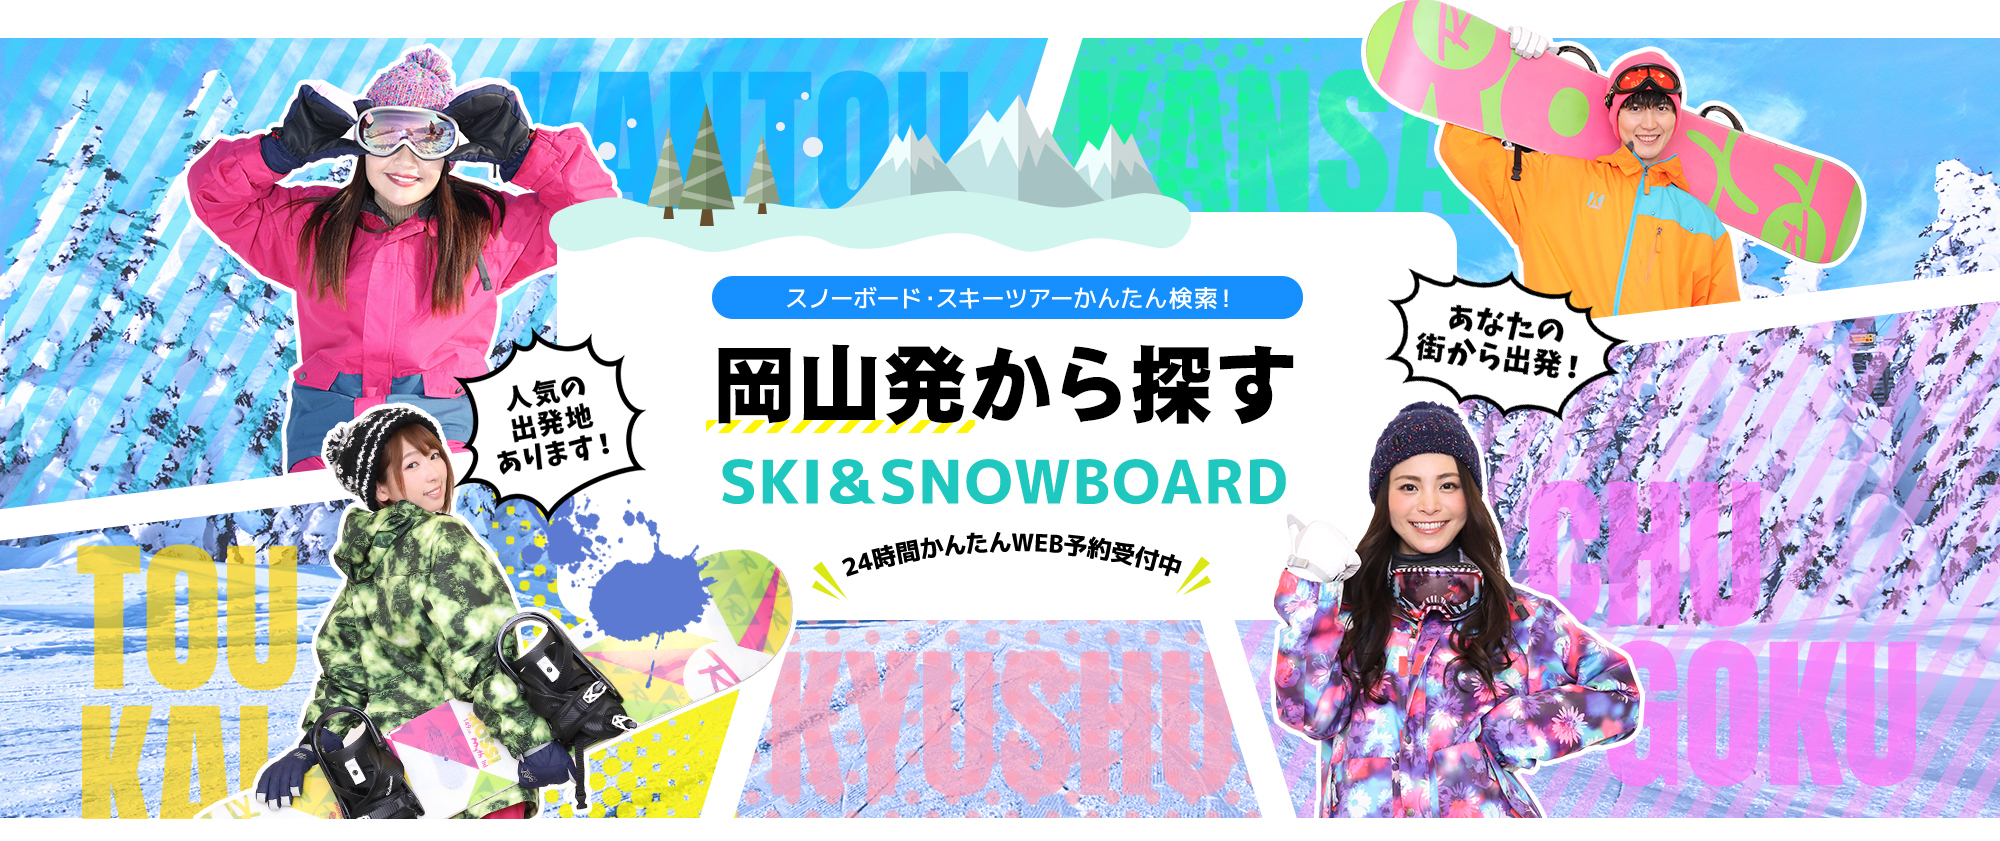 スノーボード・スキーツアーかんたん検索！ 岡山発から探す SKI&SNOWBOARD